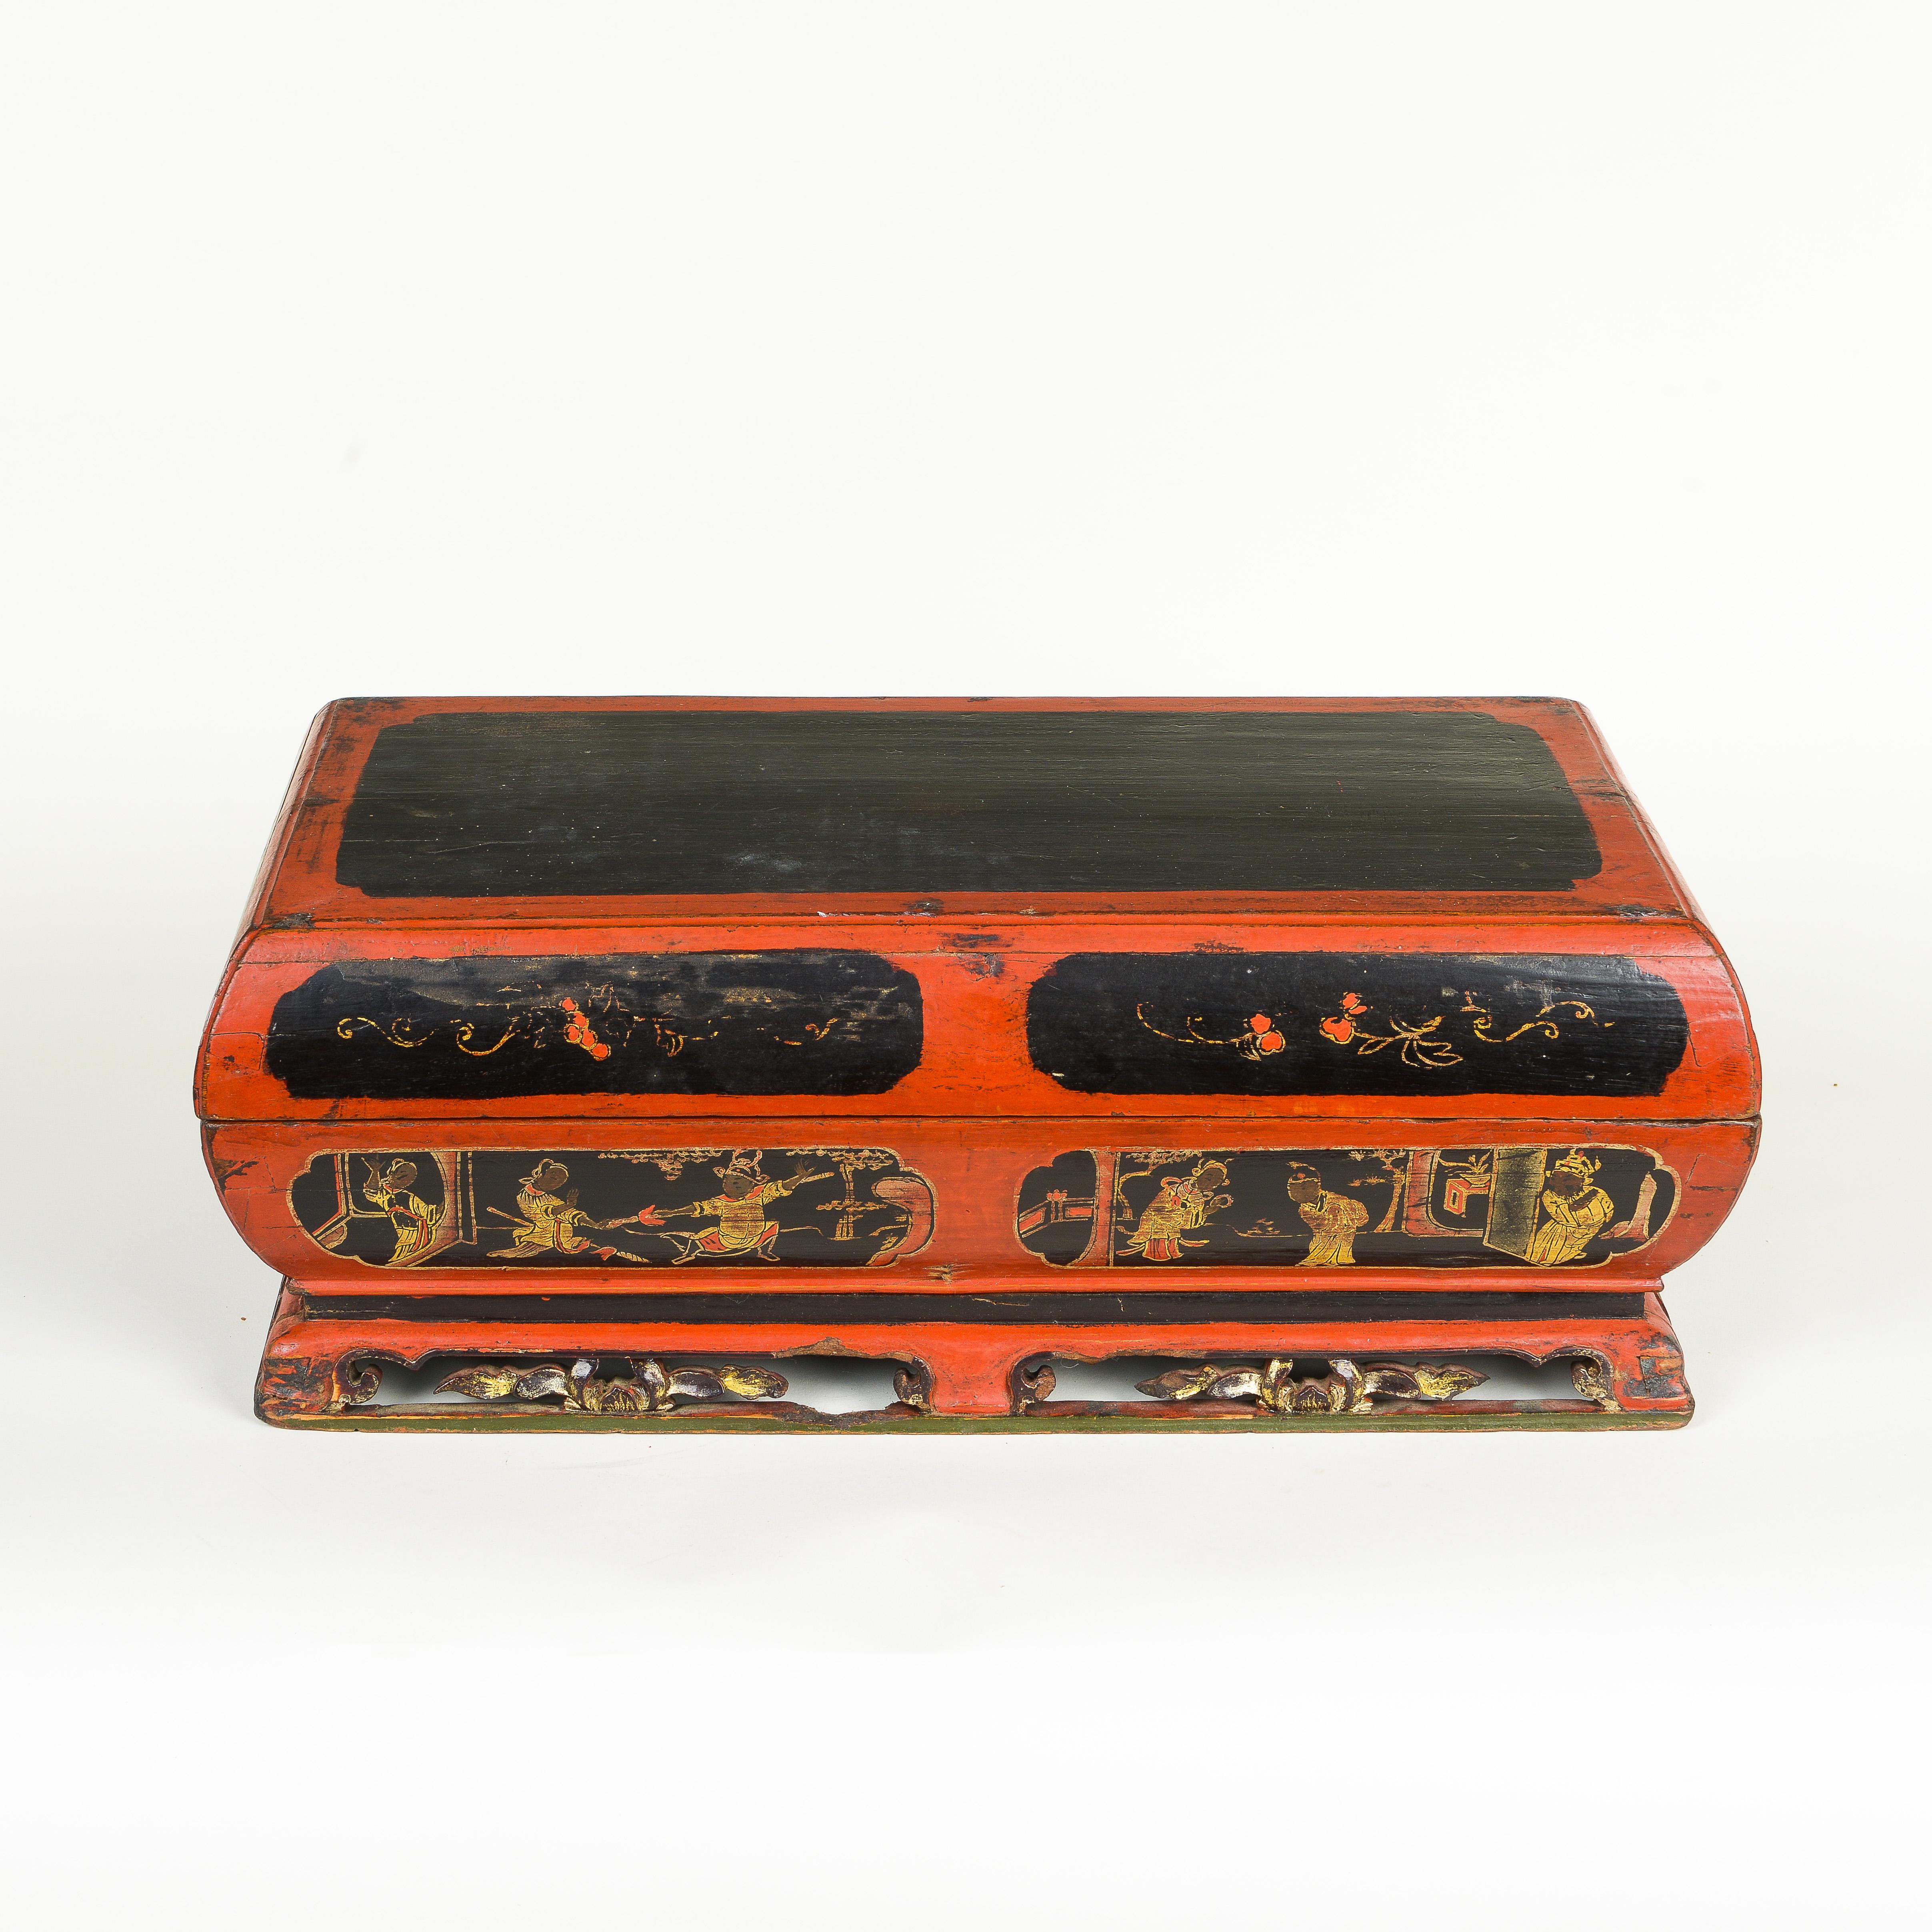 La boîte en bois rectangulaire à couvercle est peinte en noir et rouge avec des cartouches de personnages de la Cour et des décorations florales ; elle s'ouvre pour révéler huit plats.
